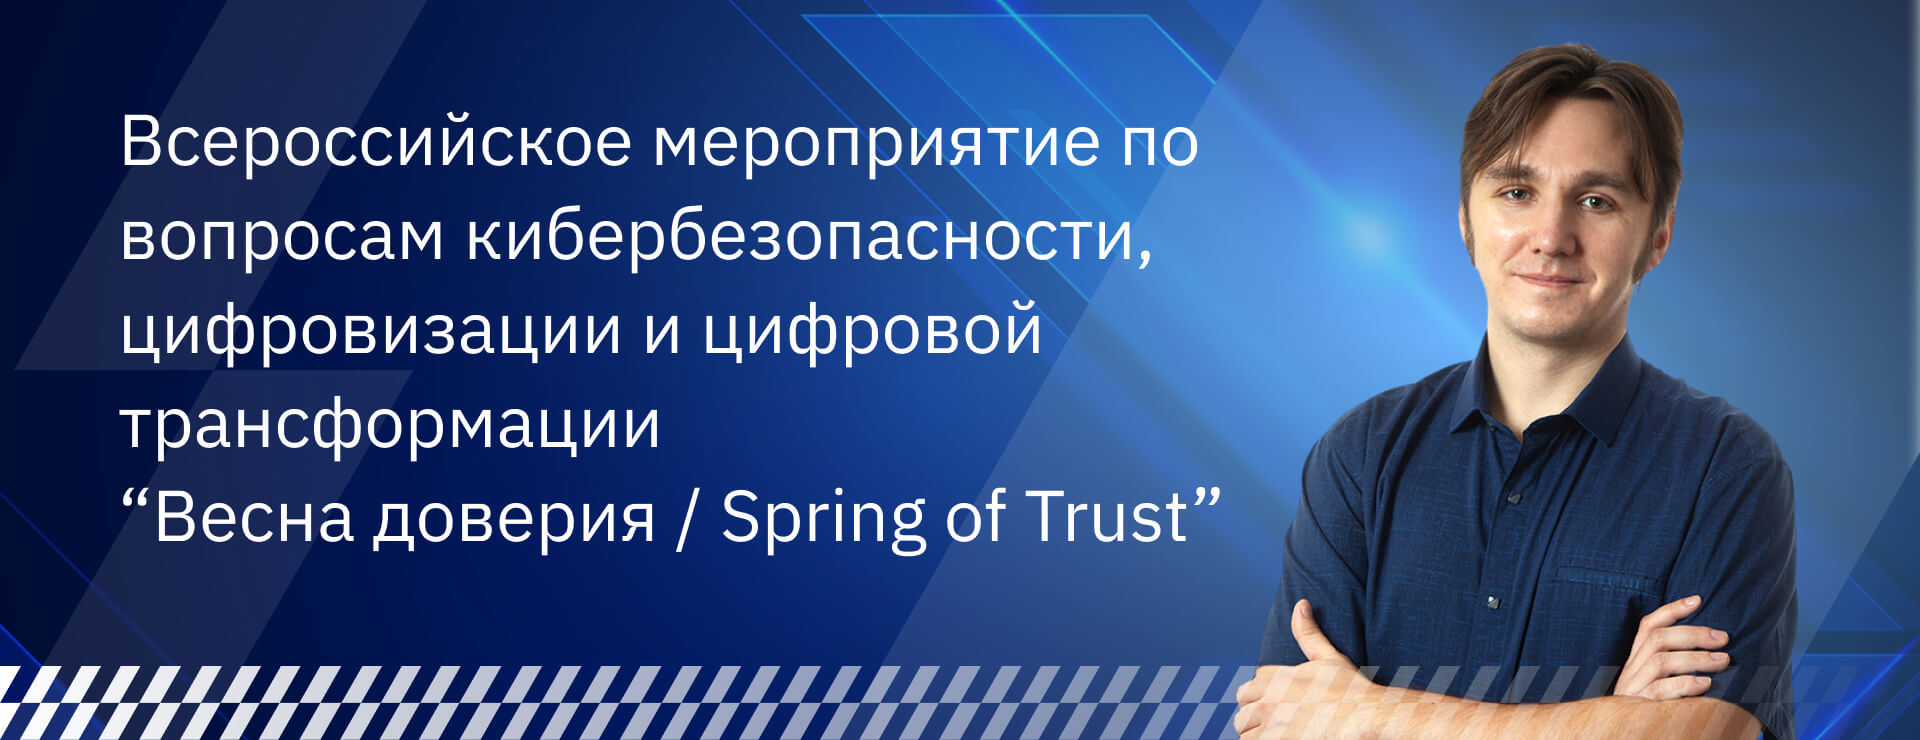 Всероссийское мероприятие по вопросам кибербезопасности “Весна доверия / Spring of Trust”